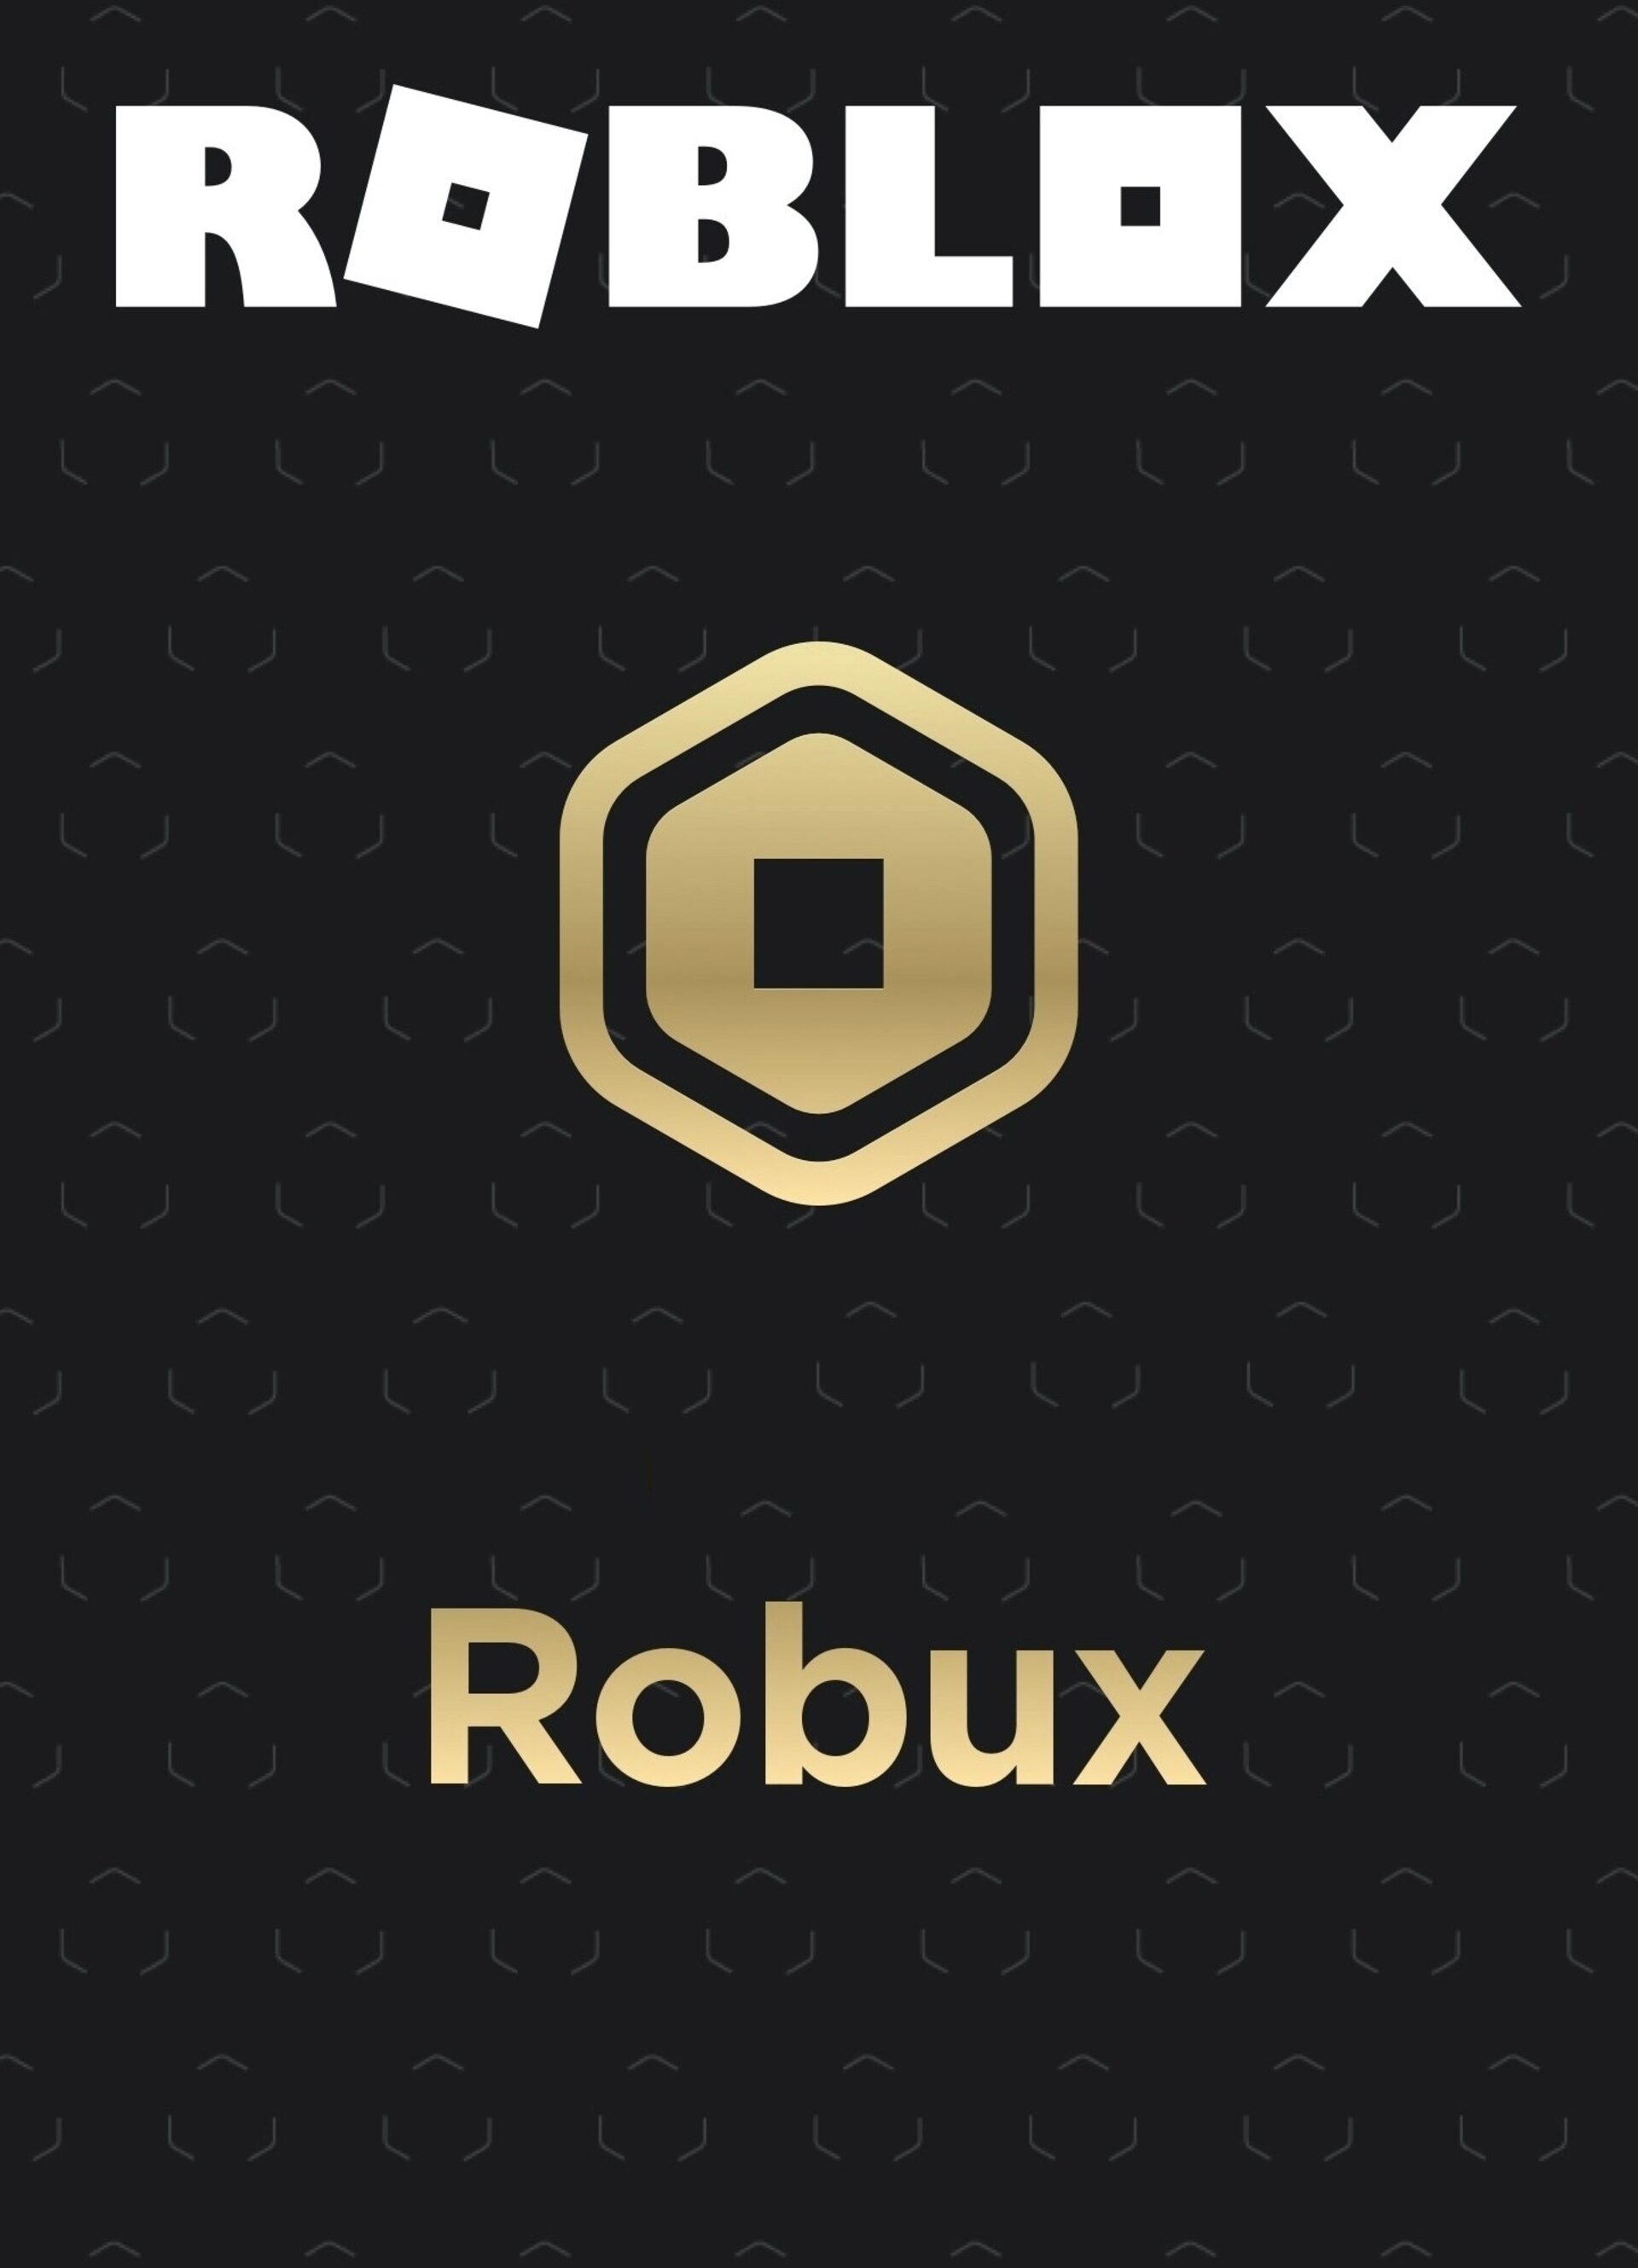 cartão presente roblox-10000 robux inclui o código do jogo online